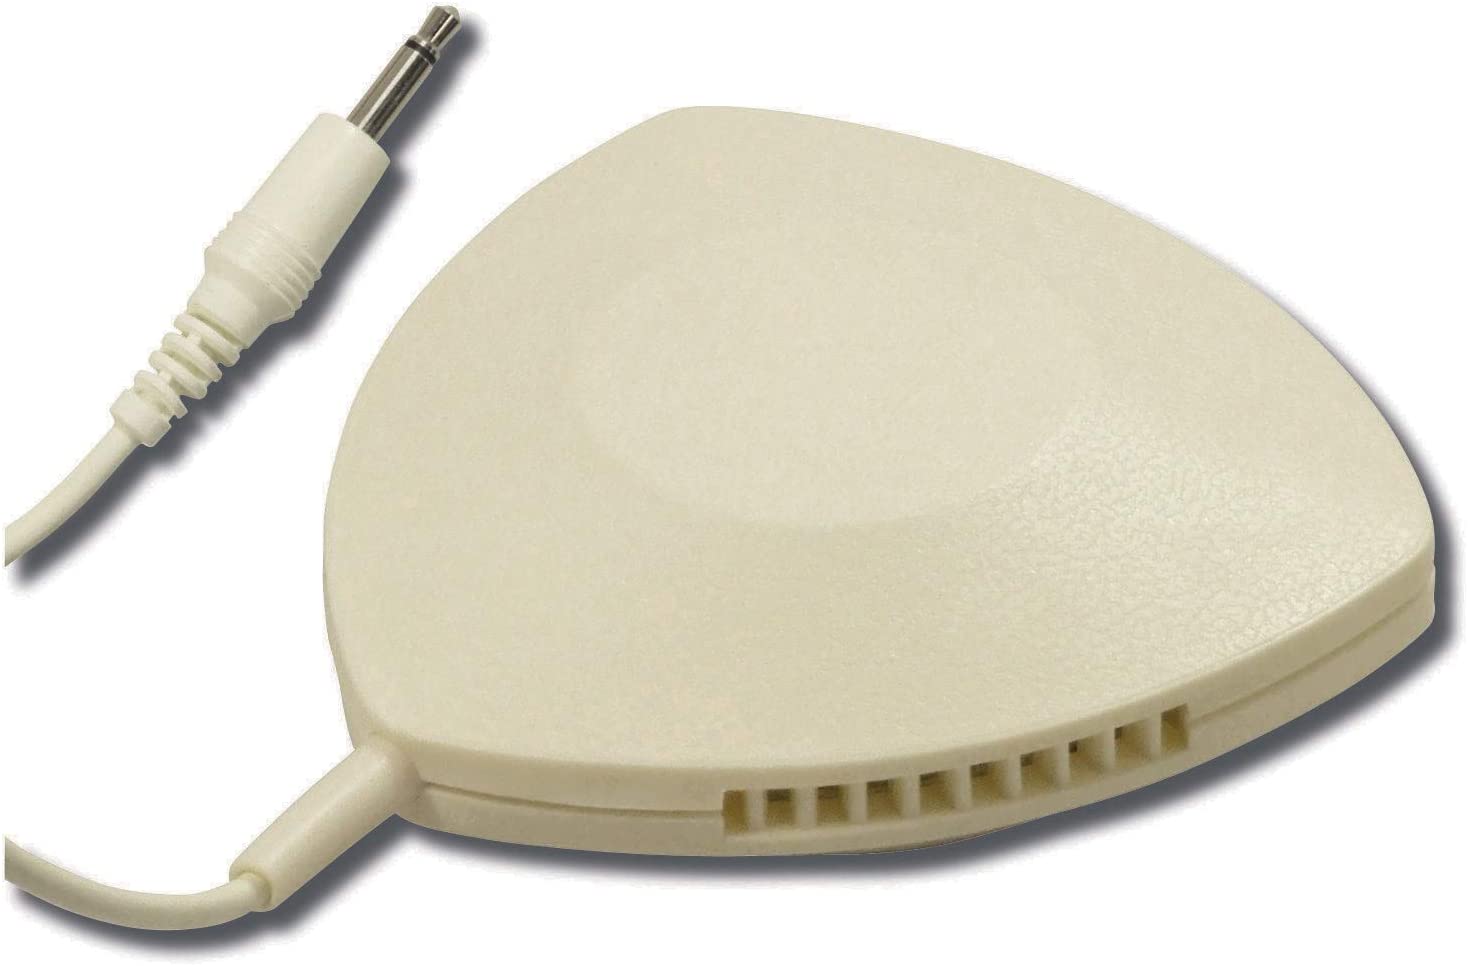 Soundlab-pillow-speaker